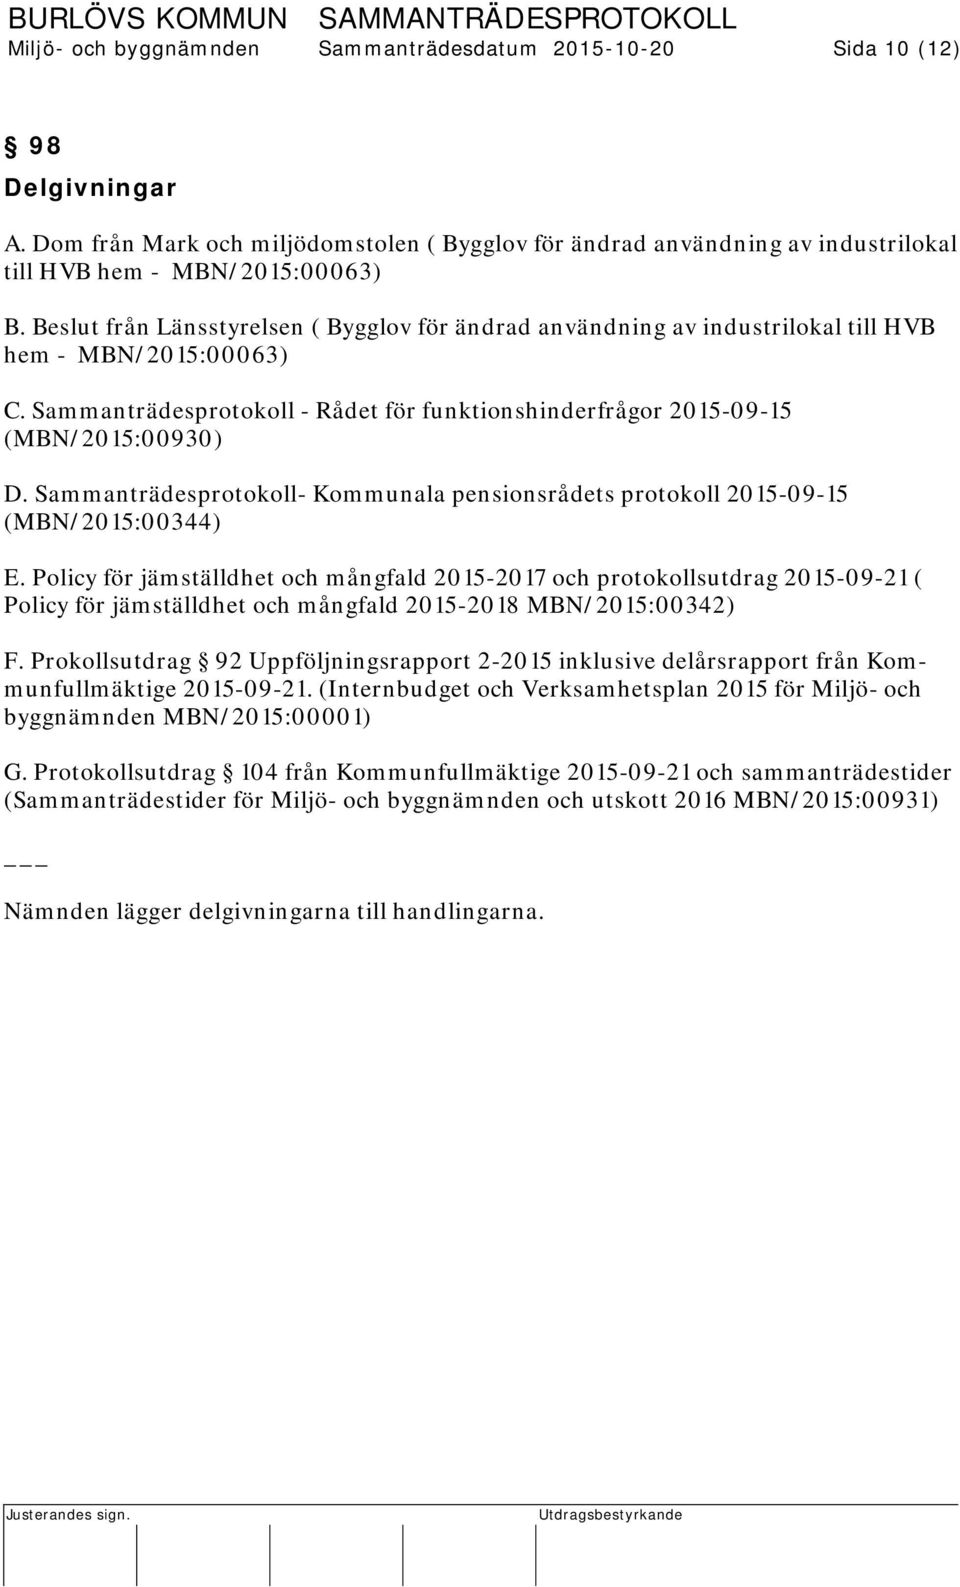 Sammanträdesprotokoll- Kommunala pensionsrådets protokoll 2015-09-15 (MBN/2015:00344) E.